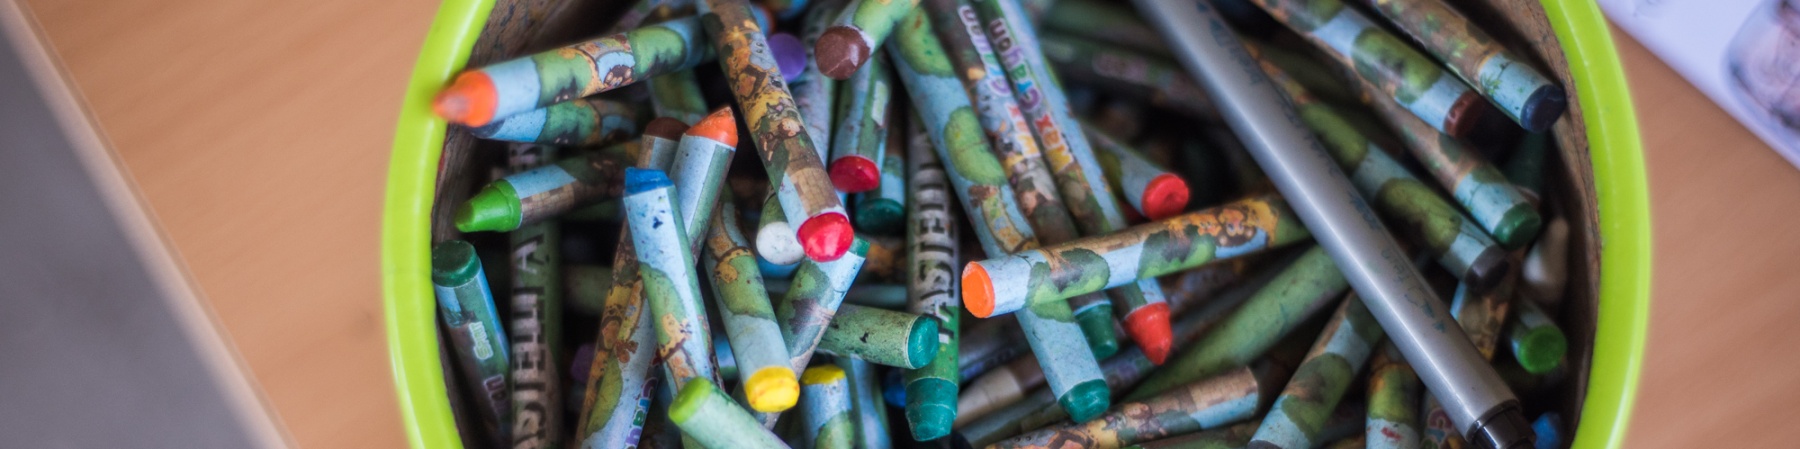 Ciotola con matite e penne colorate